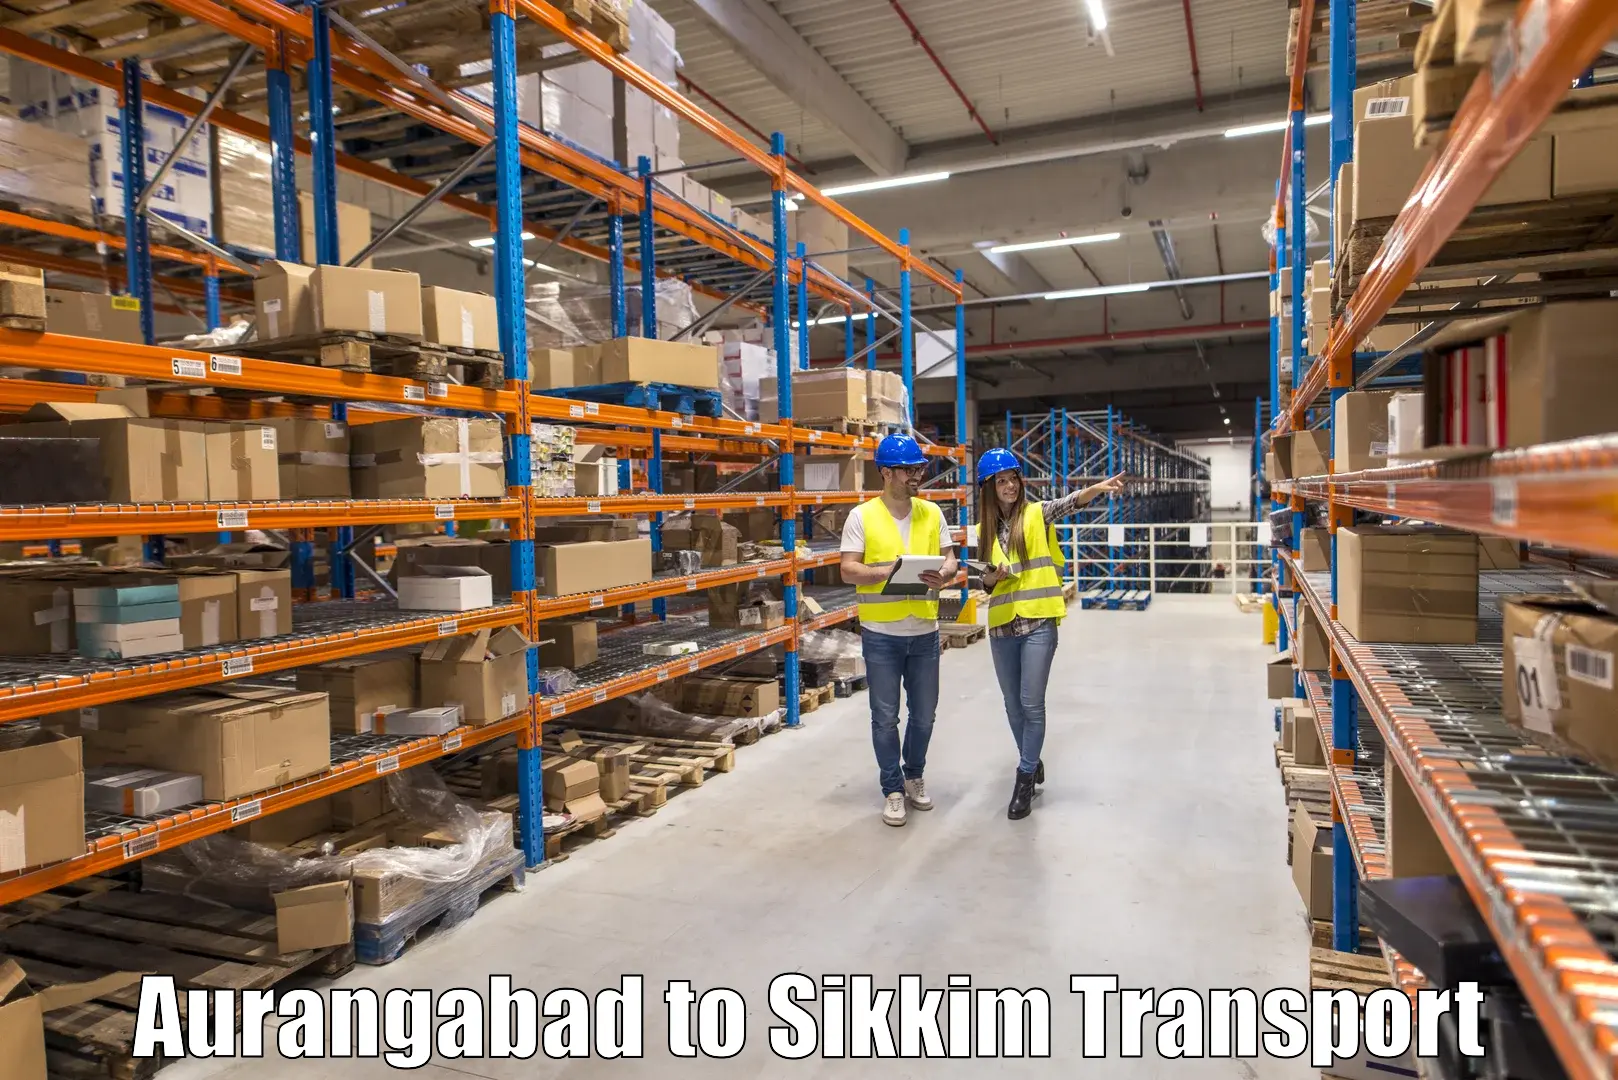 Cargo train transport services Aurangabad to Namchi